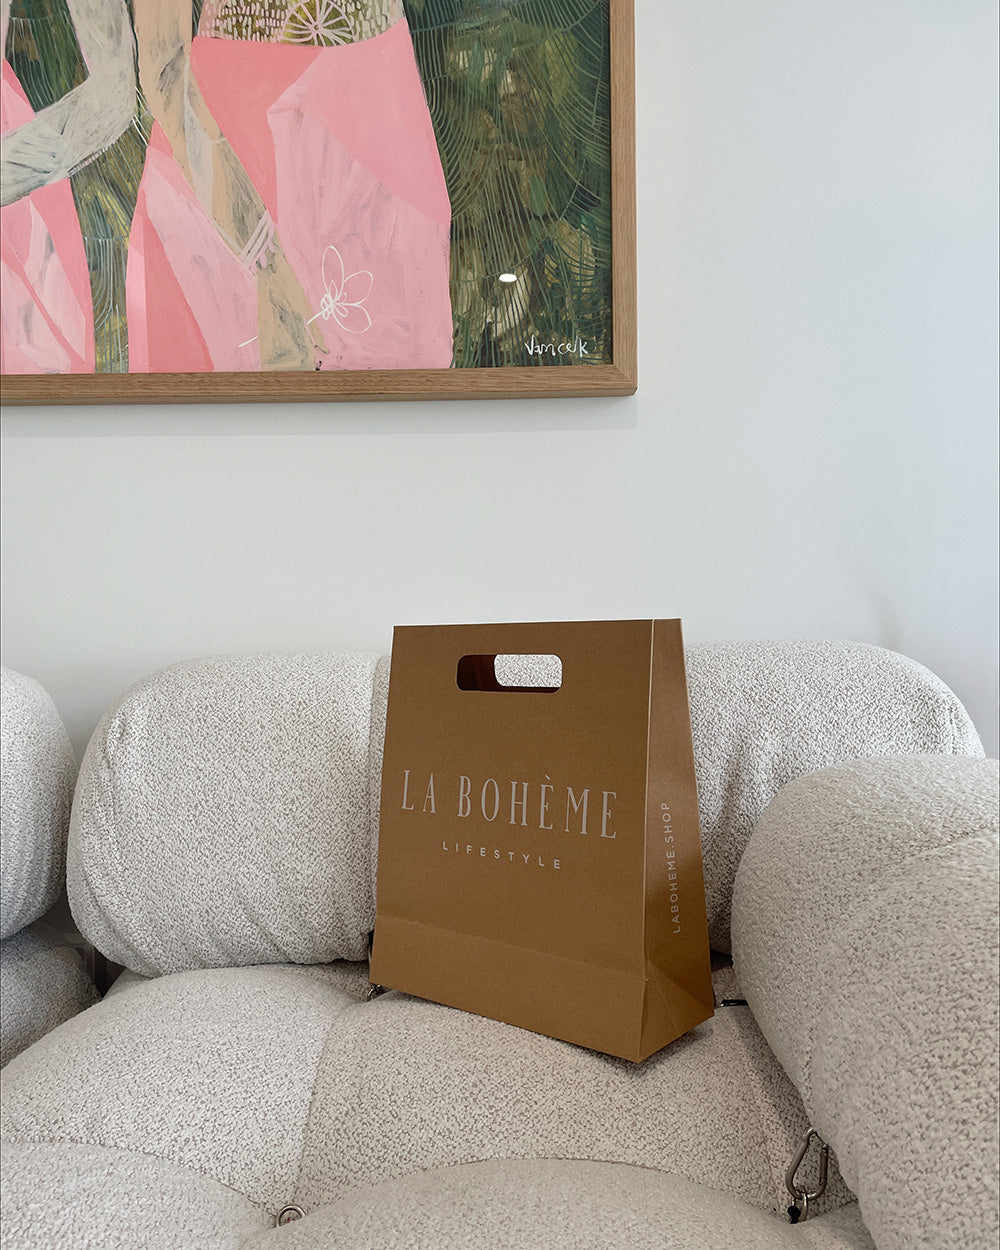 La Bohème Lifestyle - Our packaging